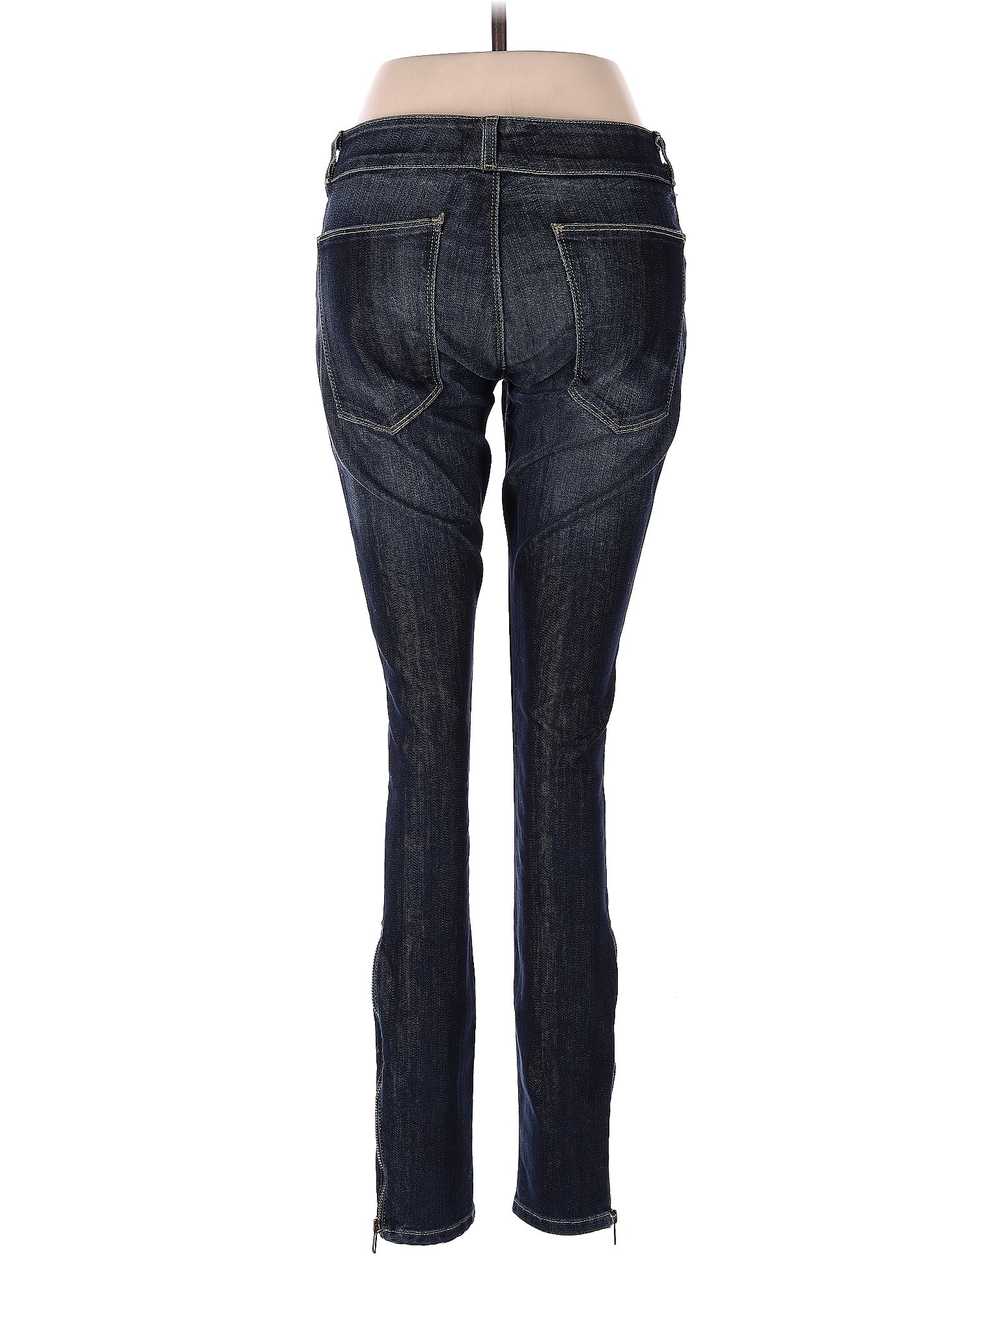 Current/Elliott Women Blue Jeans XS - image 2